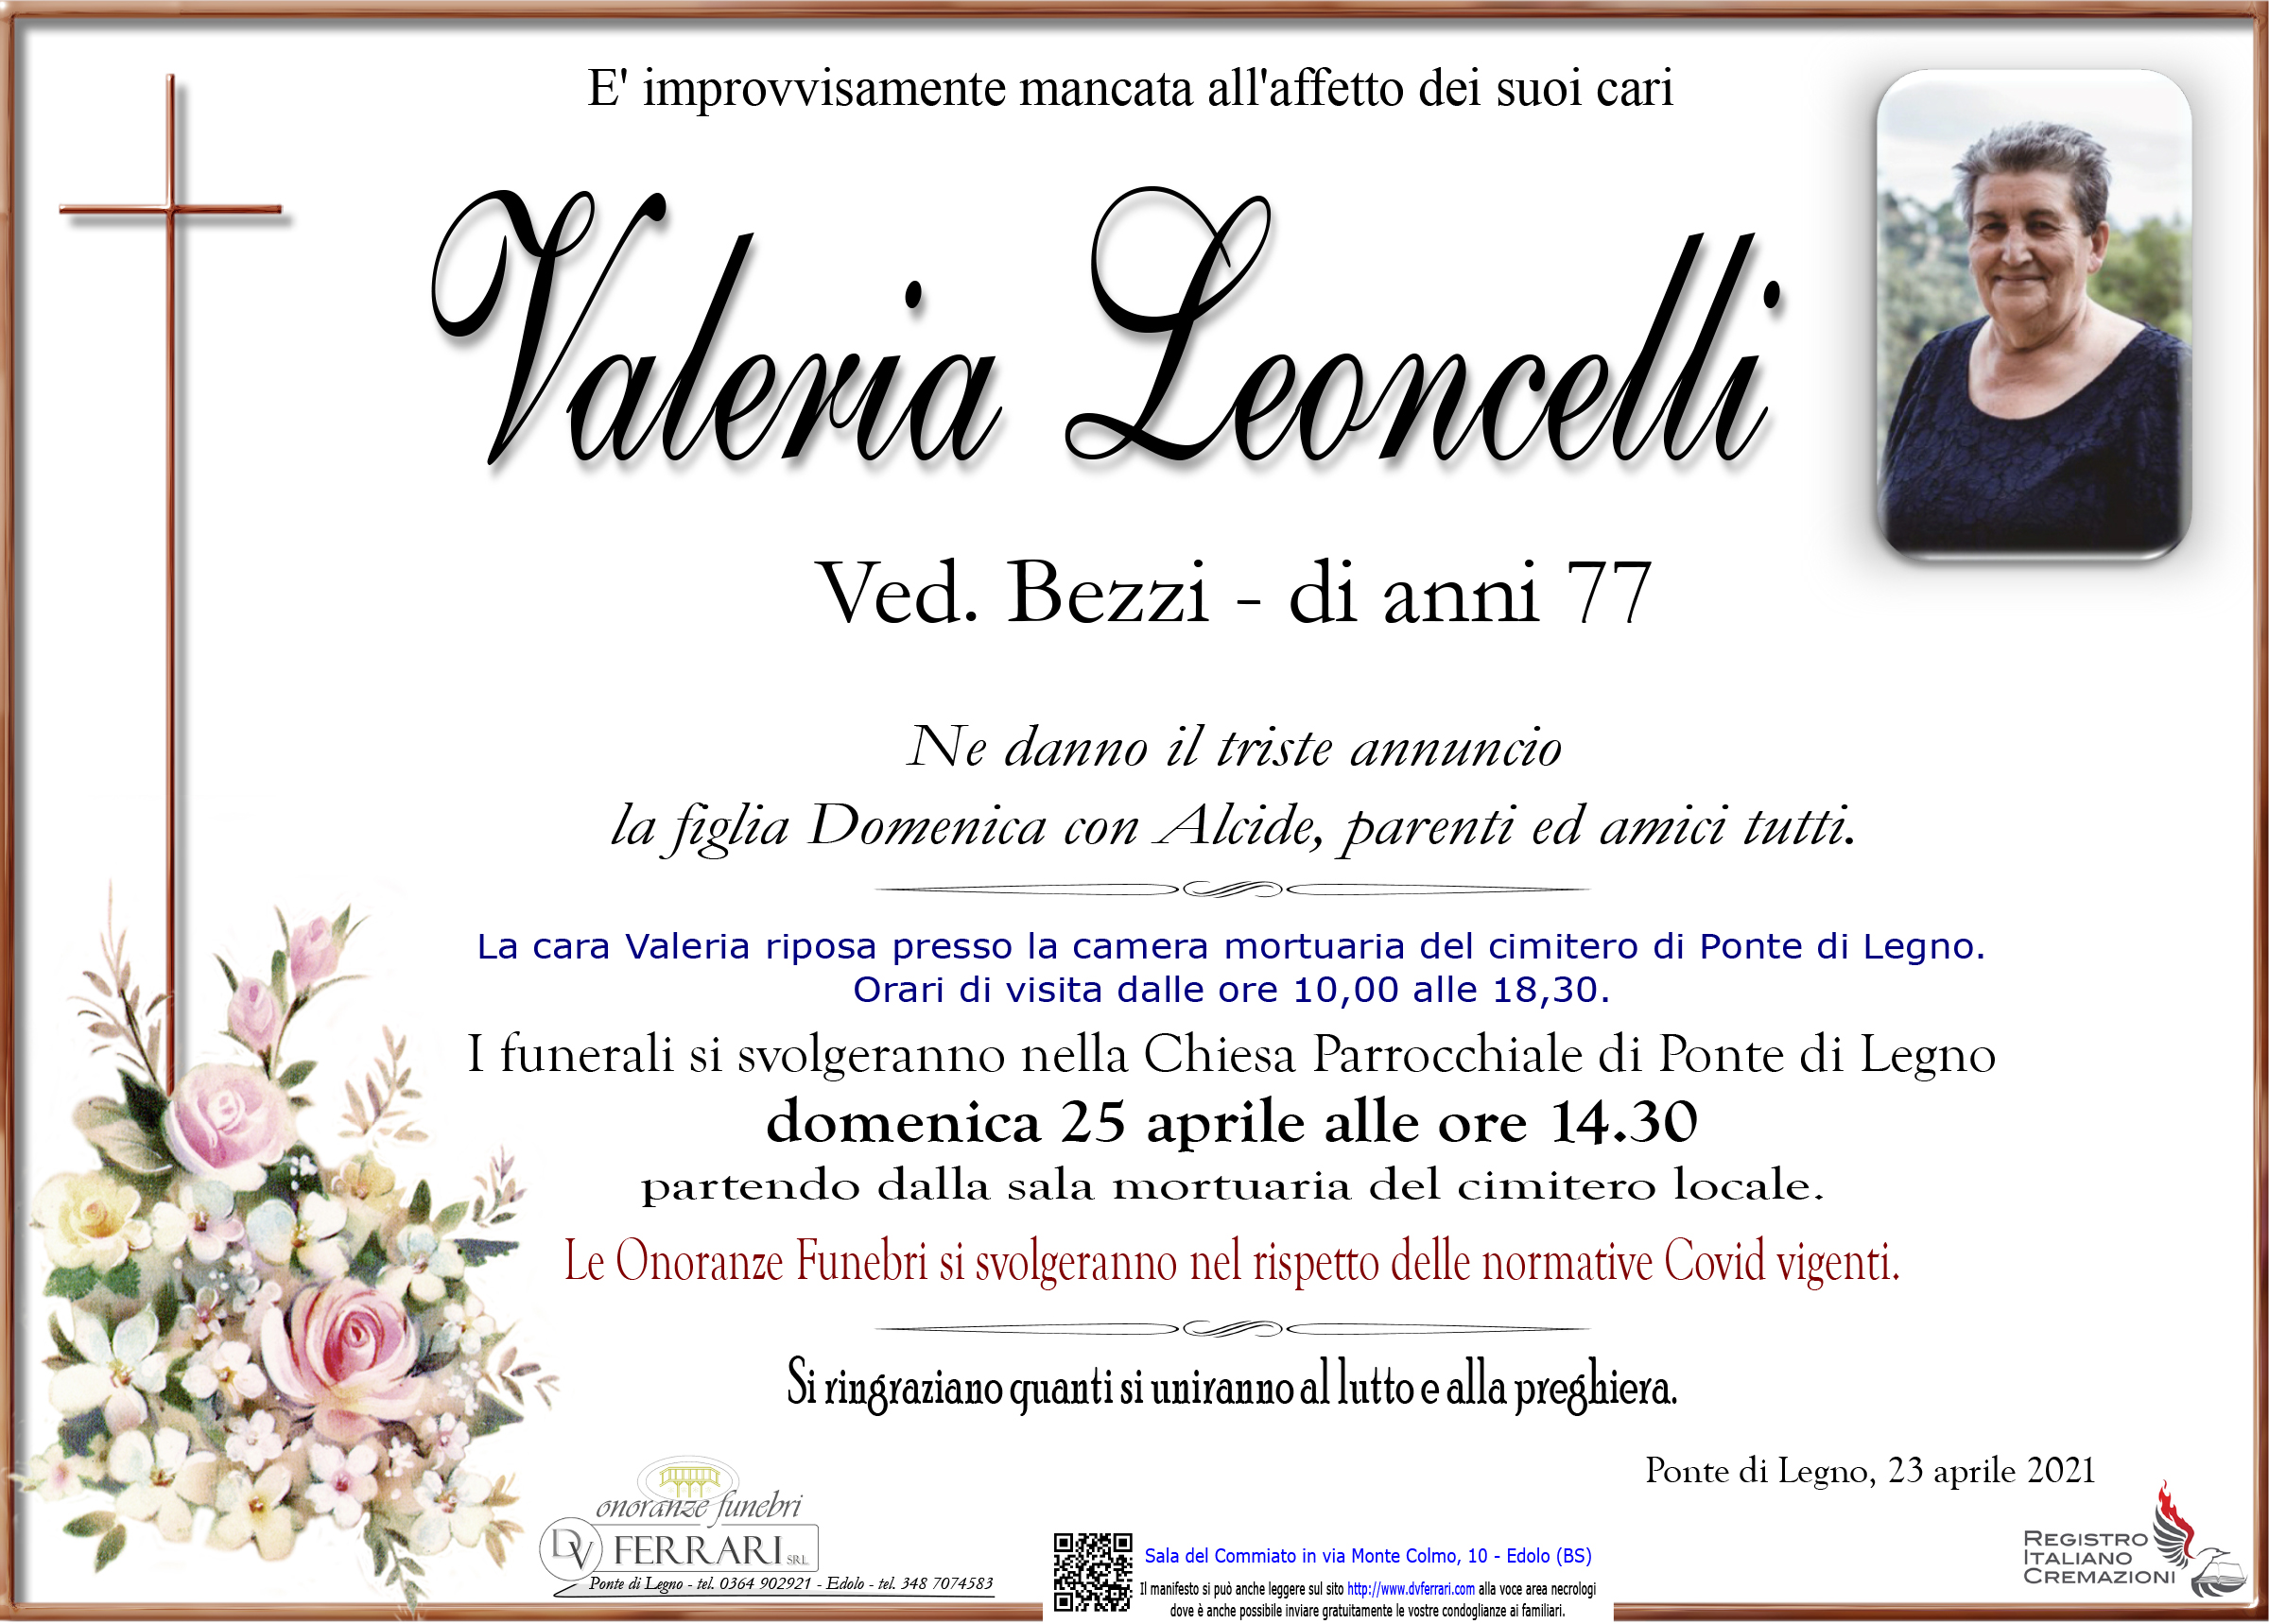 VALERIA LEONCELLI ved. BEZZI - PONTE DI LEGNO